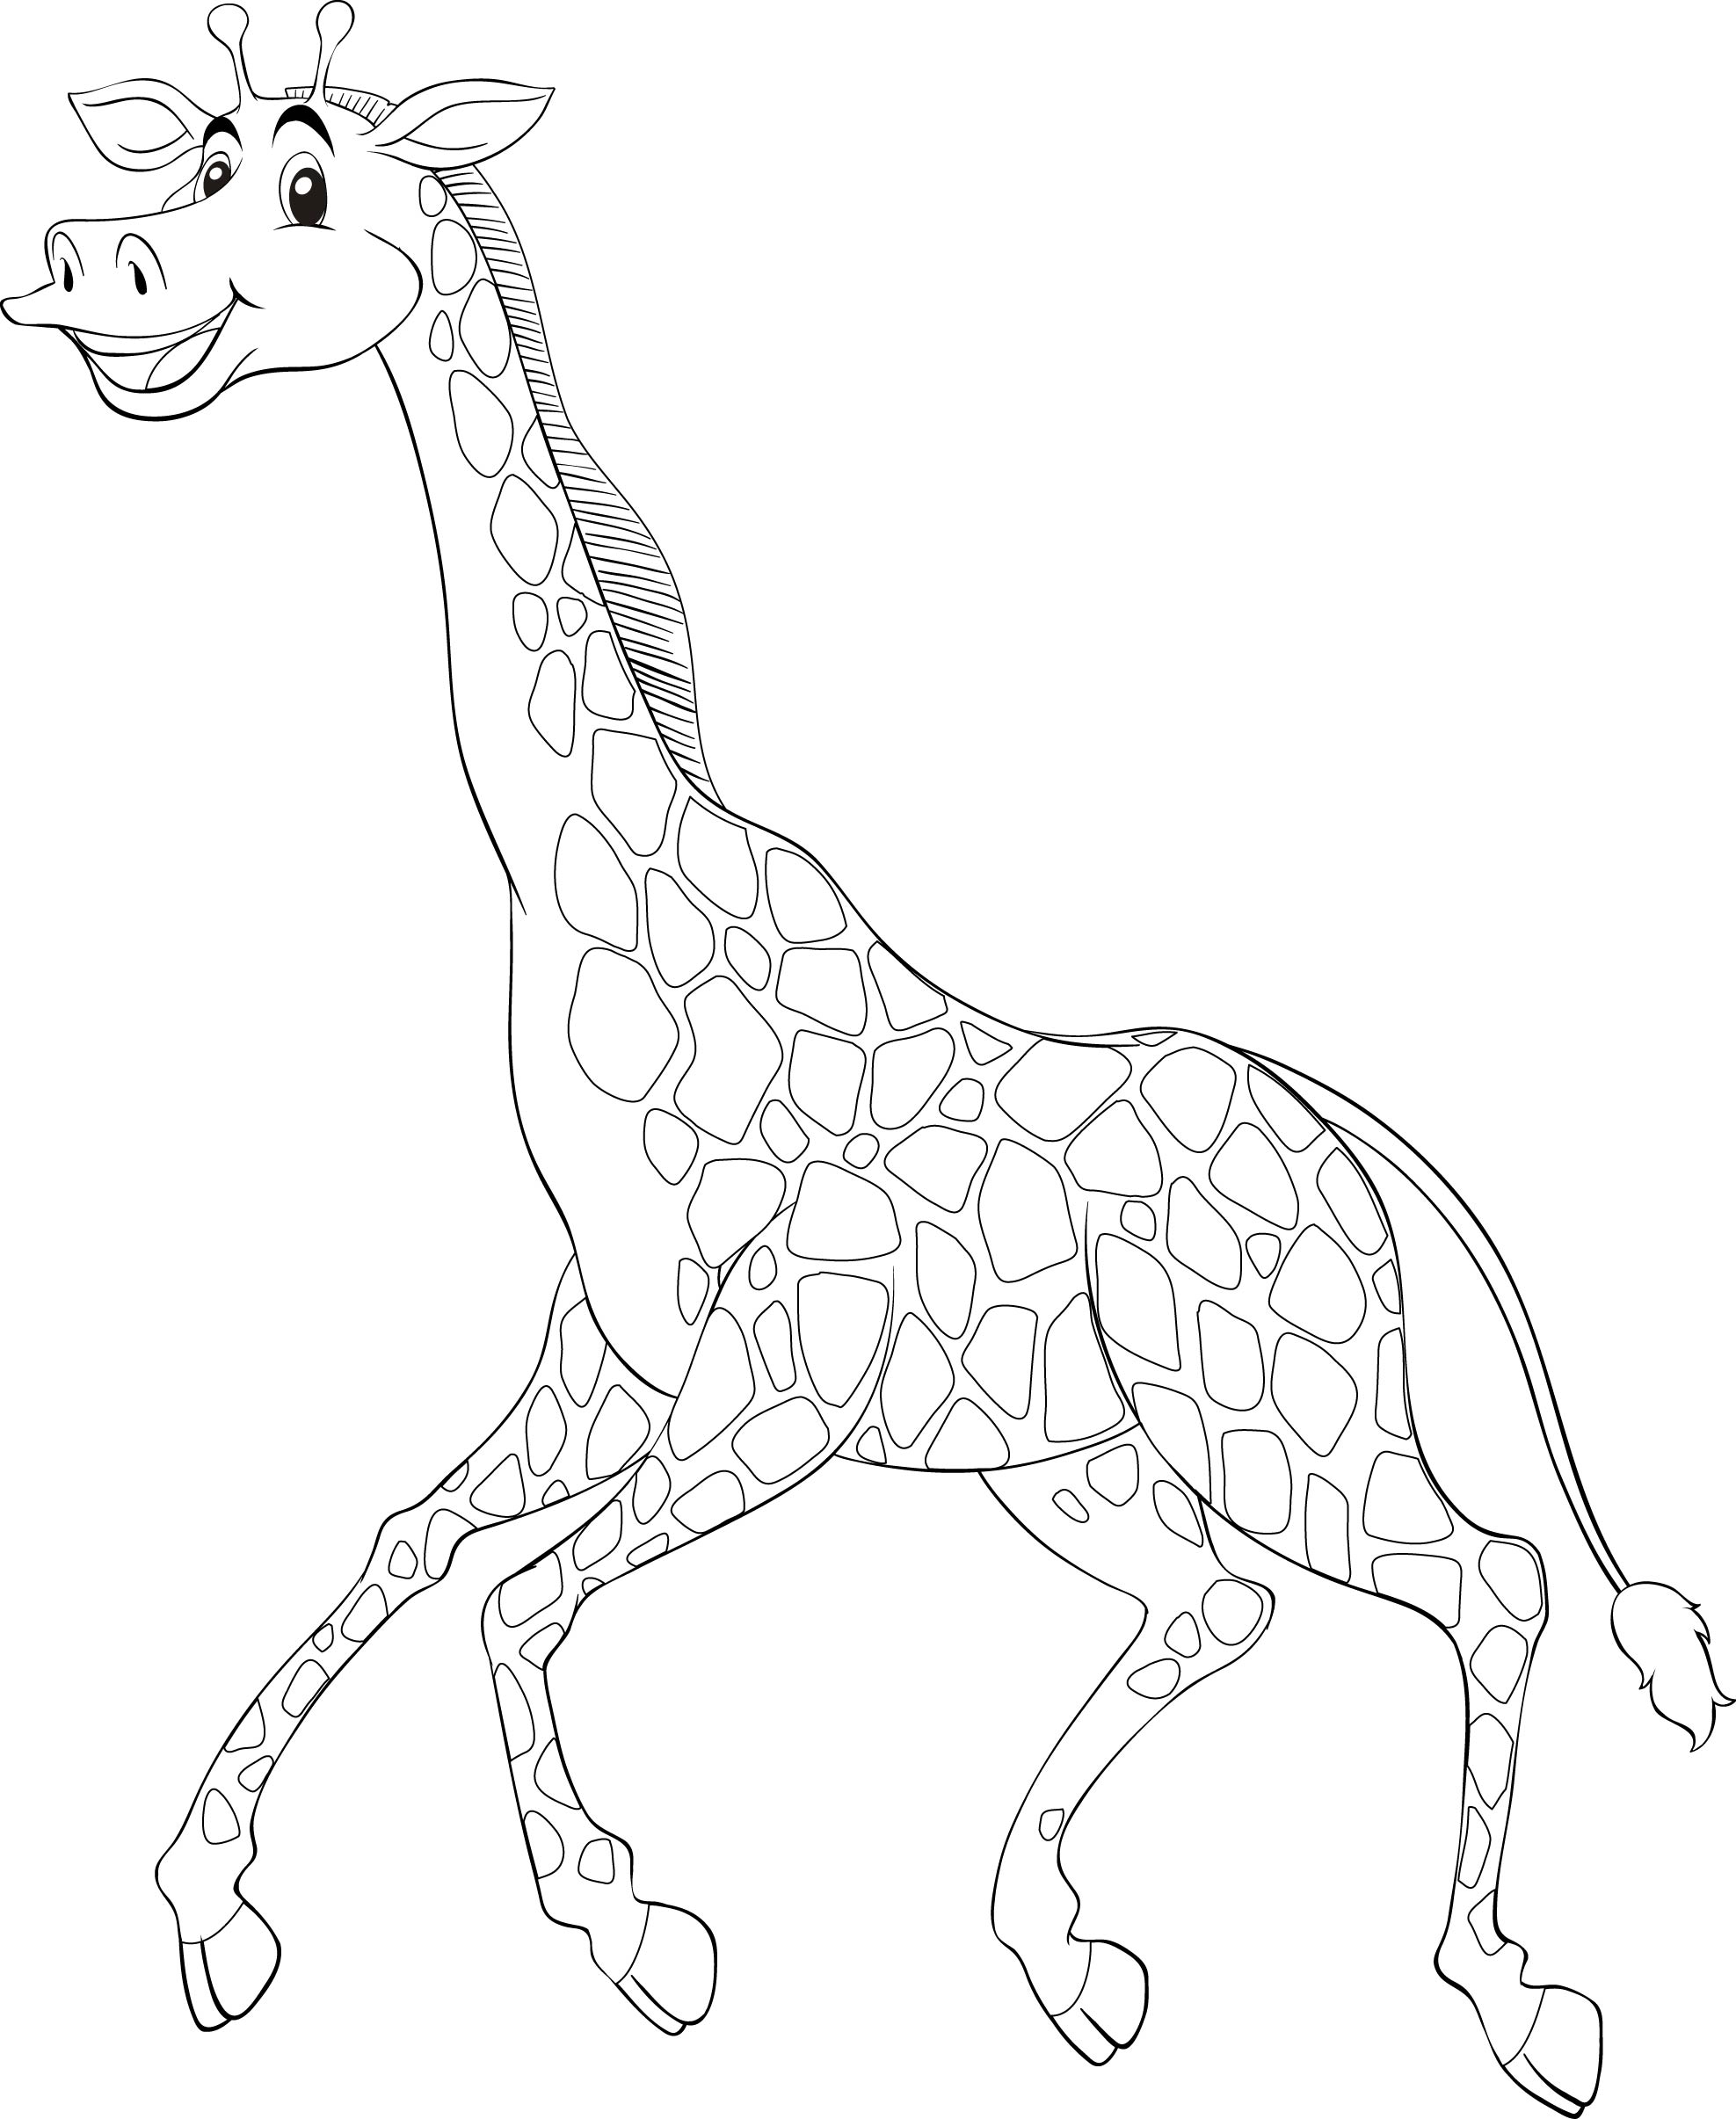 Раскраска бегущий жираф формата А4 в высоком качестве